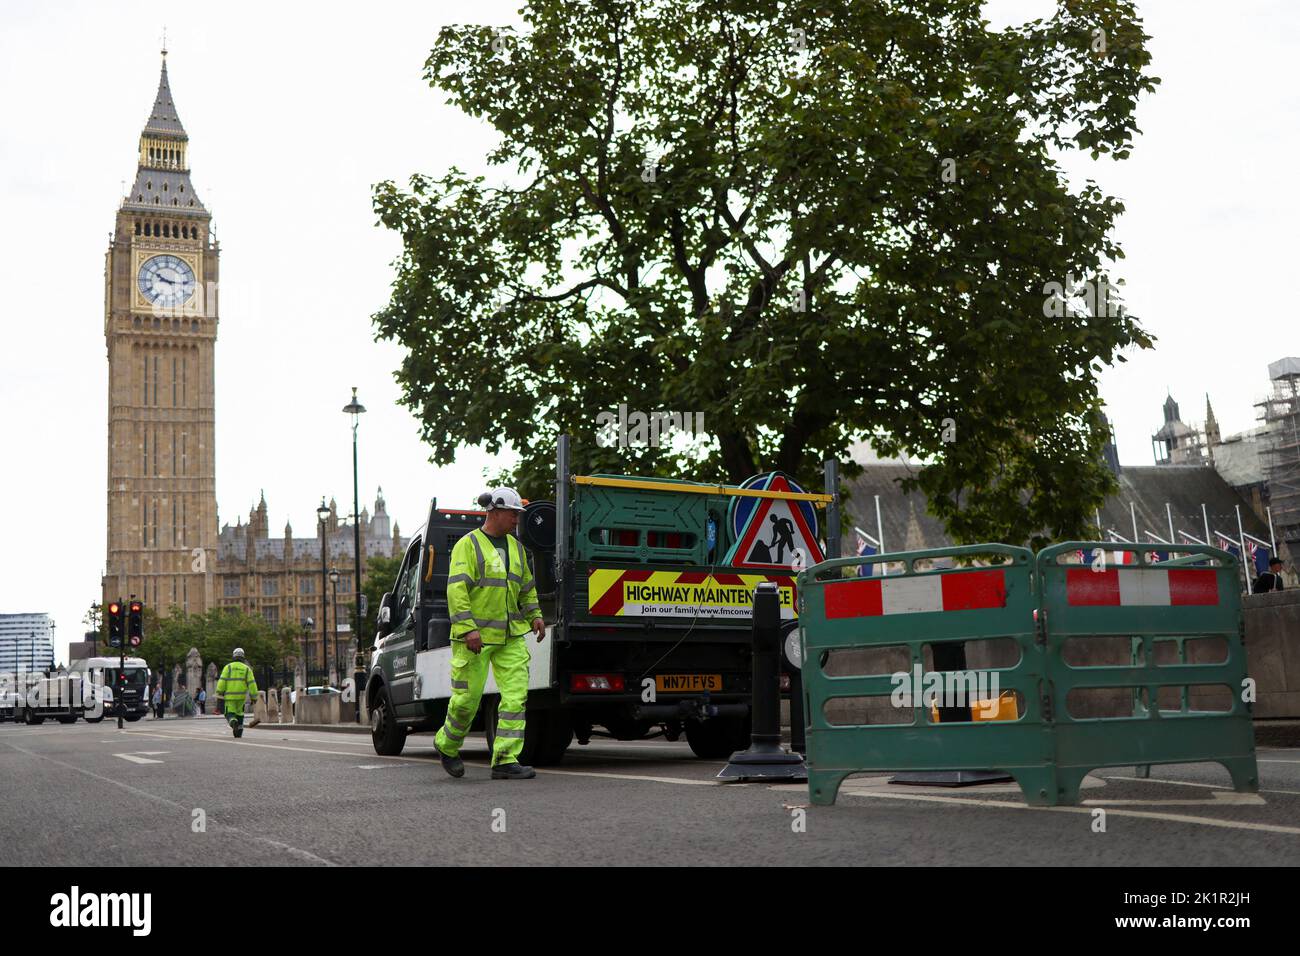 Nach der Beerdigung der britischen Königin Elizabeth am 20. September 2022 in London, Großbritannien, installieren Arbeiter Poller auf dem Parliament Square. REUTERS/Tom Nicholson Stockfoto